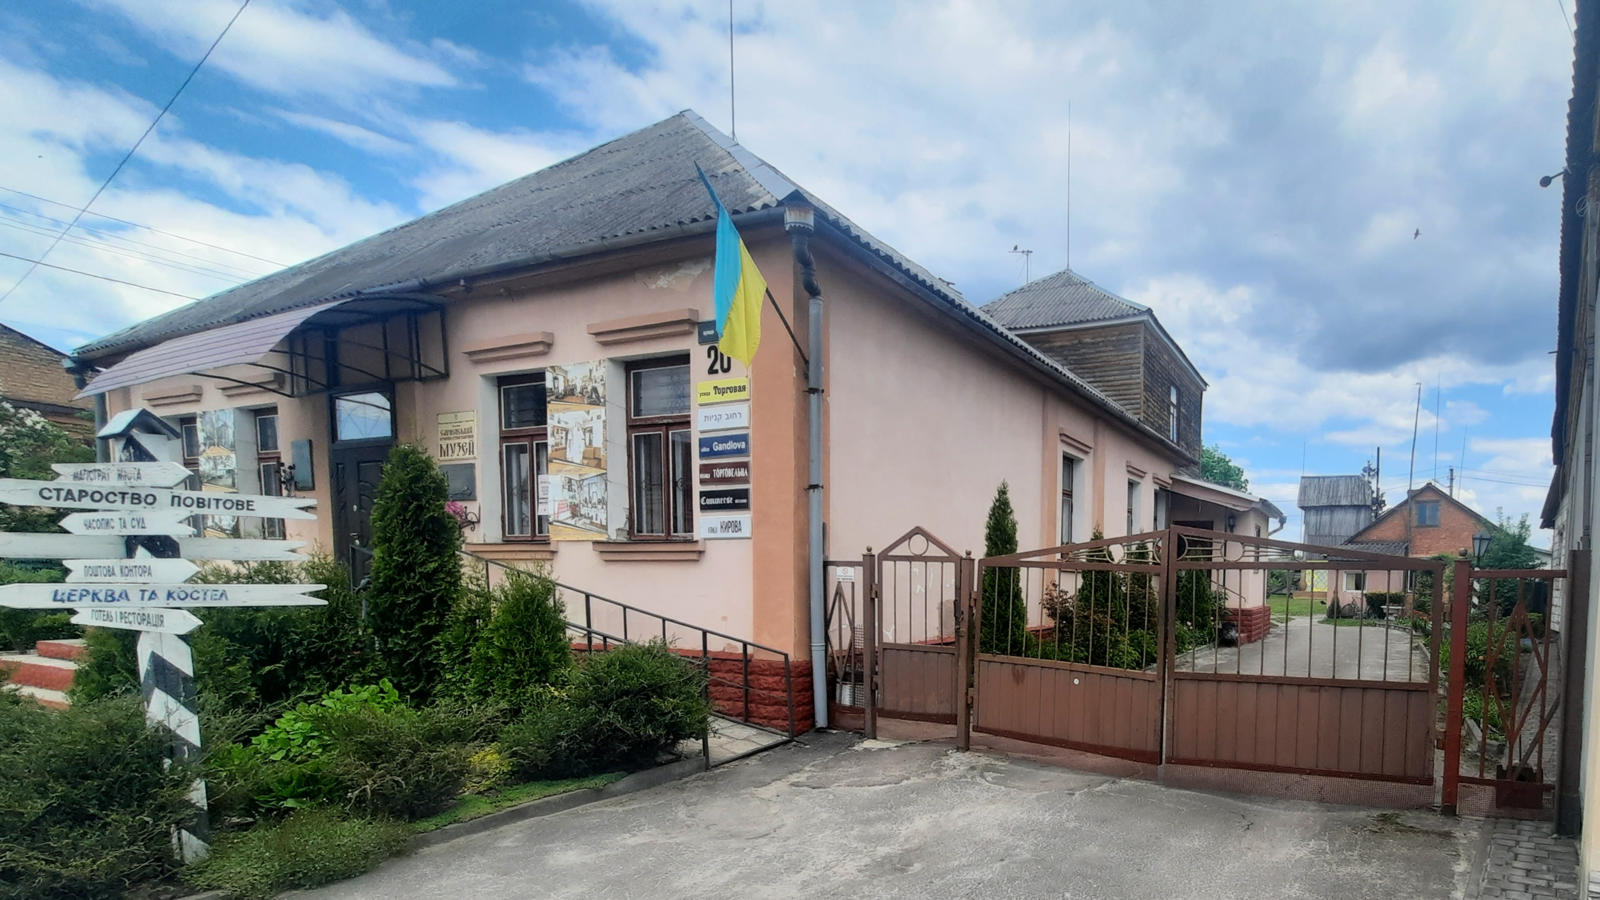 Сарненський історико-етнографічний музей